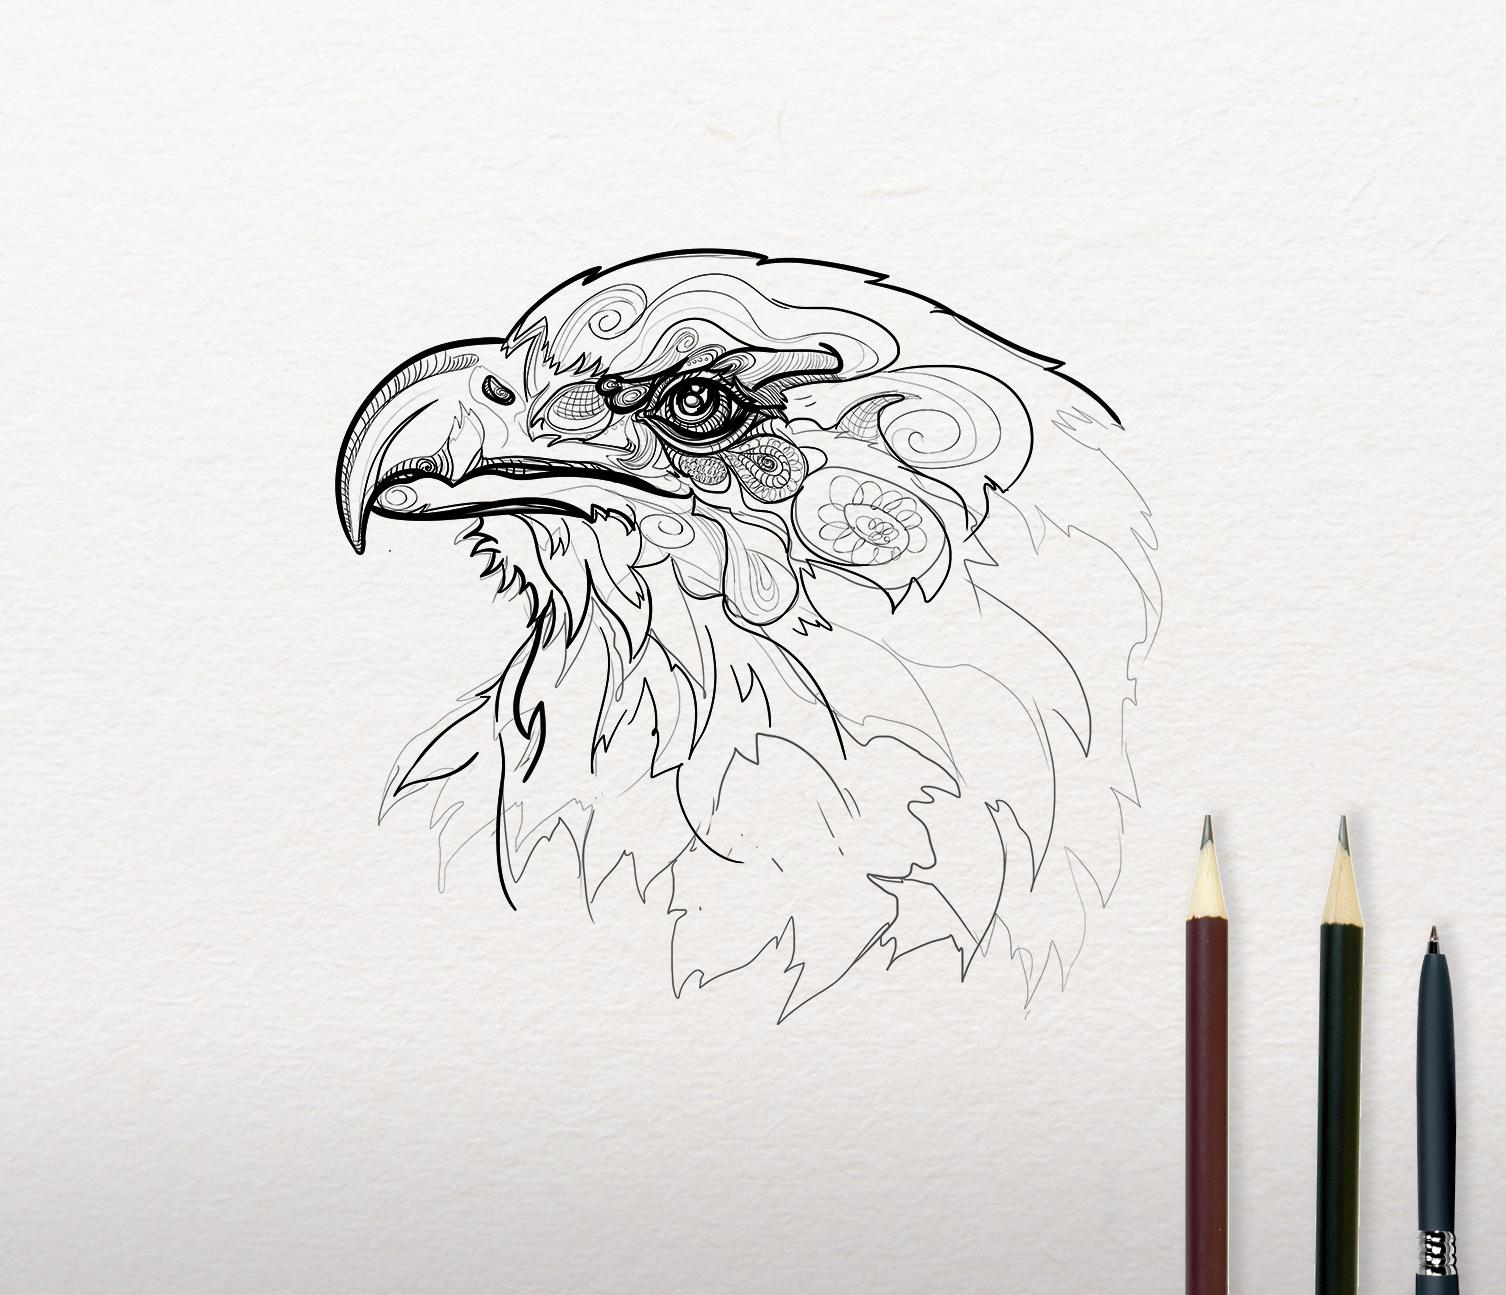 Sketch of Eagle design